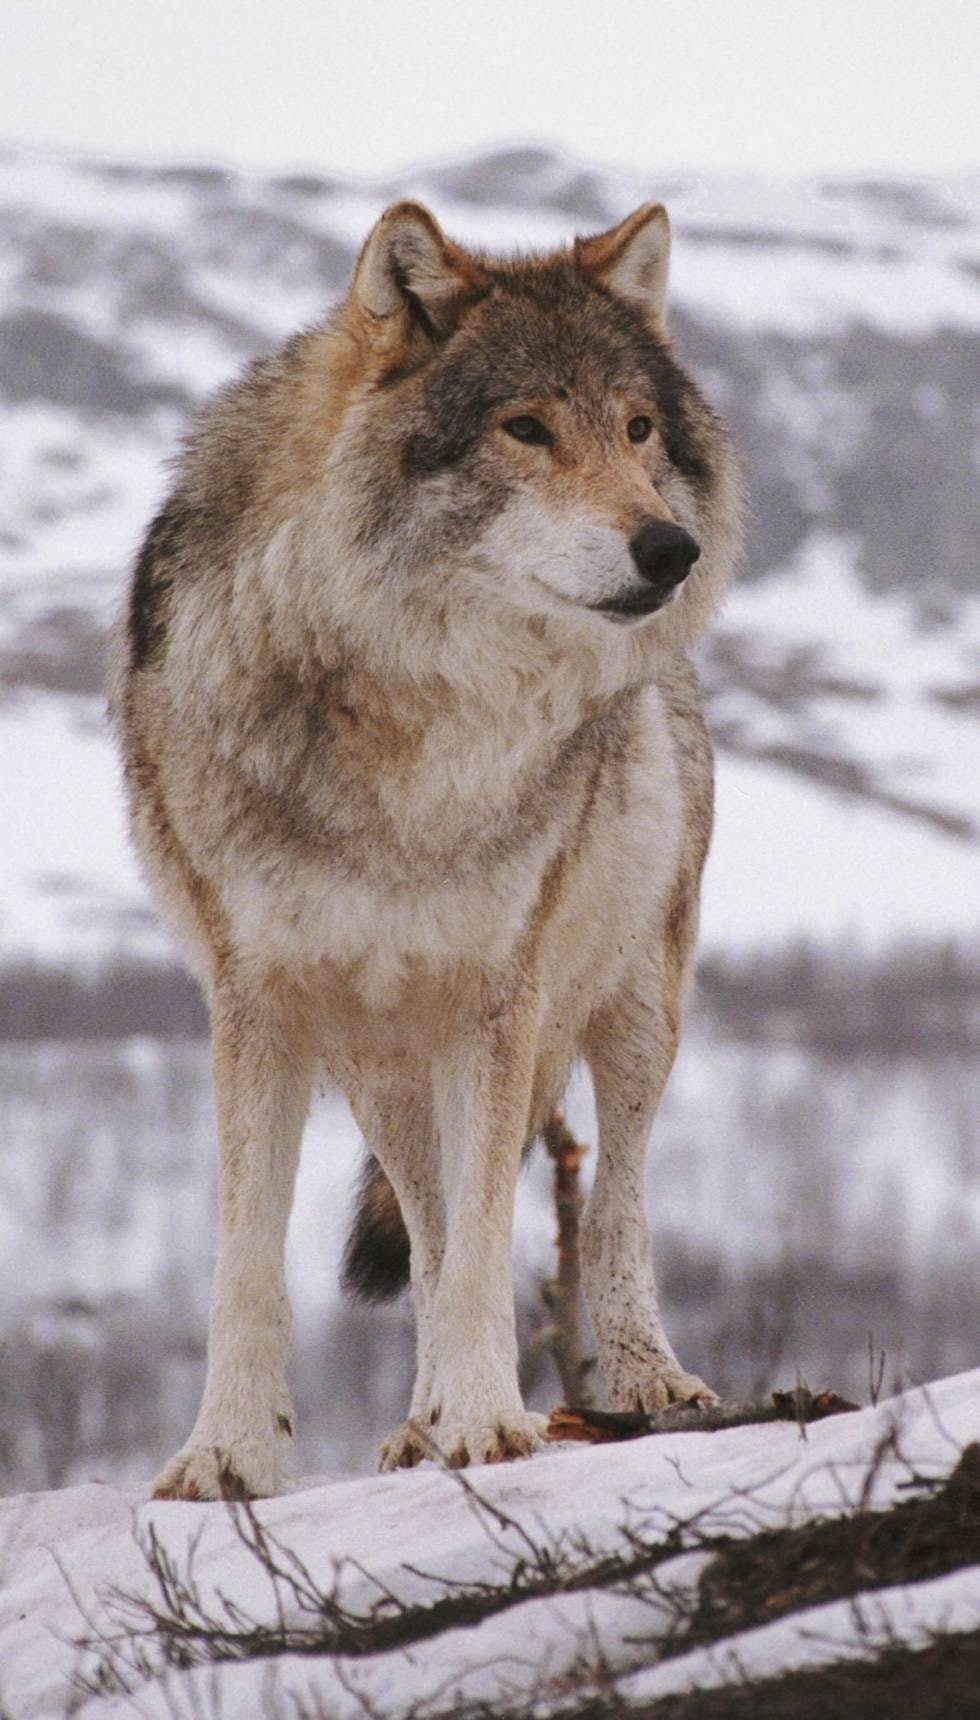 ULV: Skaper problemer for jegere i ulvesonen.